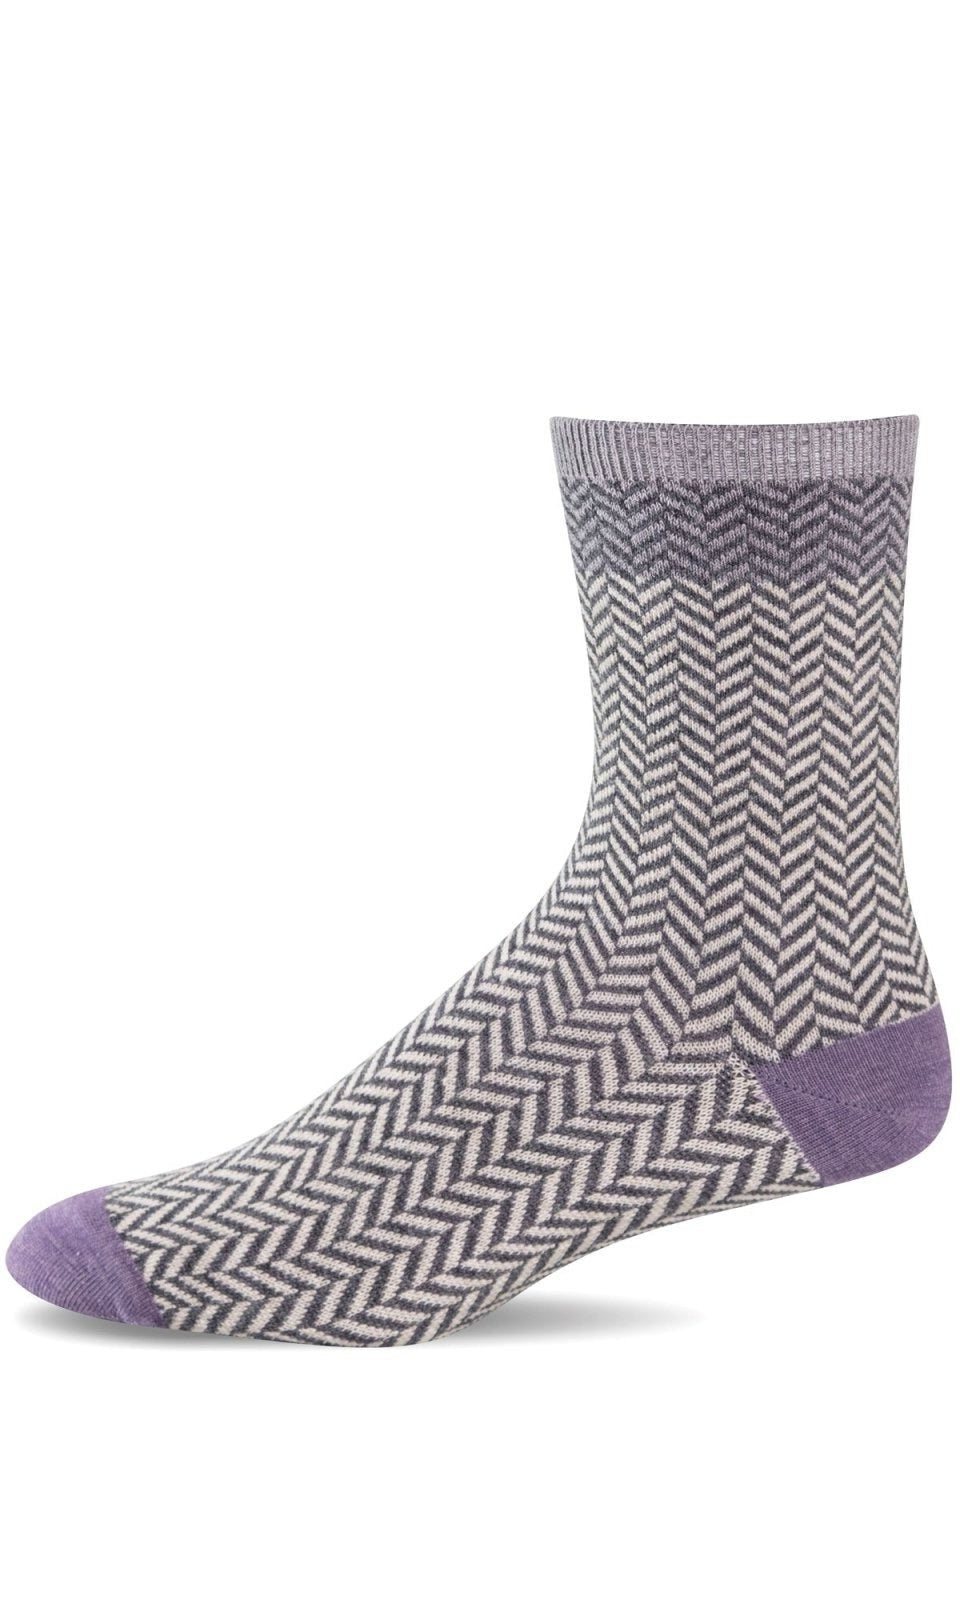 Herringbone Tweed | Charcoal - Socks - Sockwell